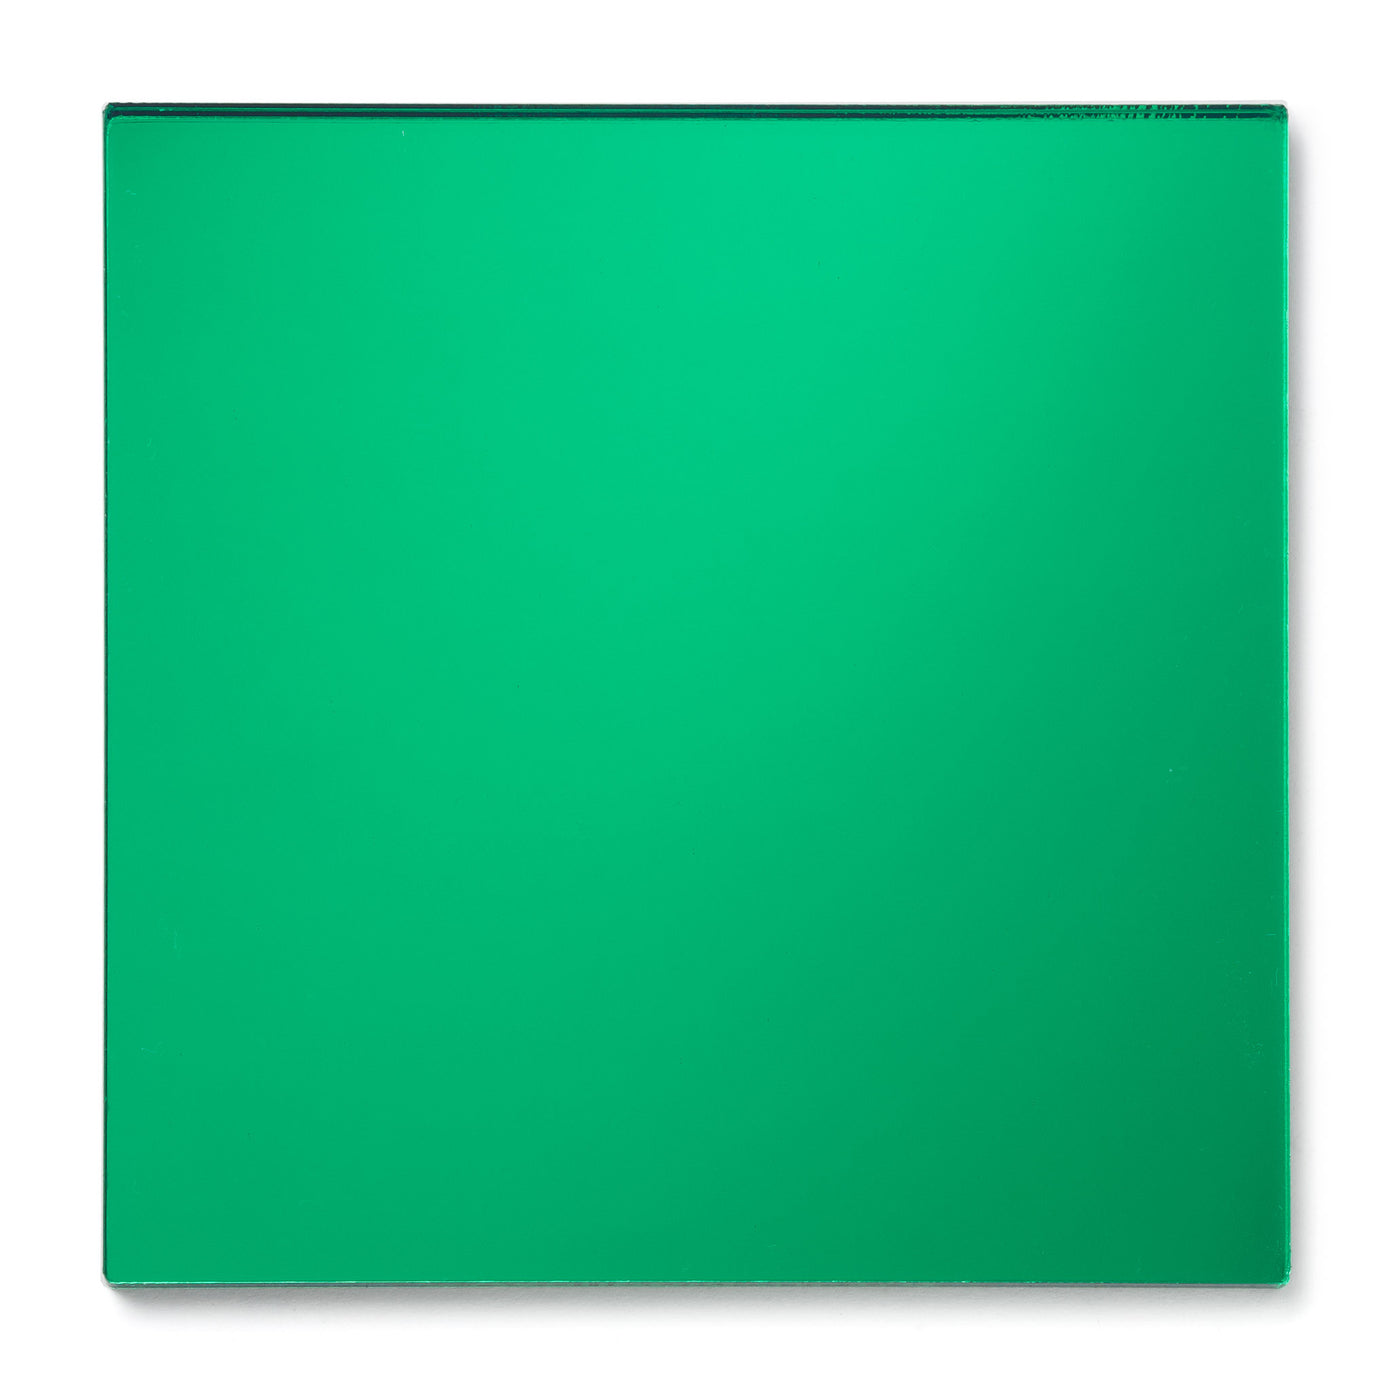 Green Edge Glass Effect Acrylic Sheet, Cut To Size